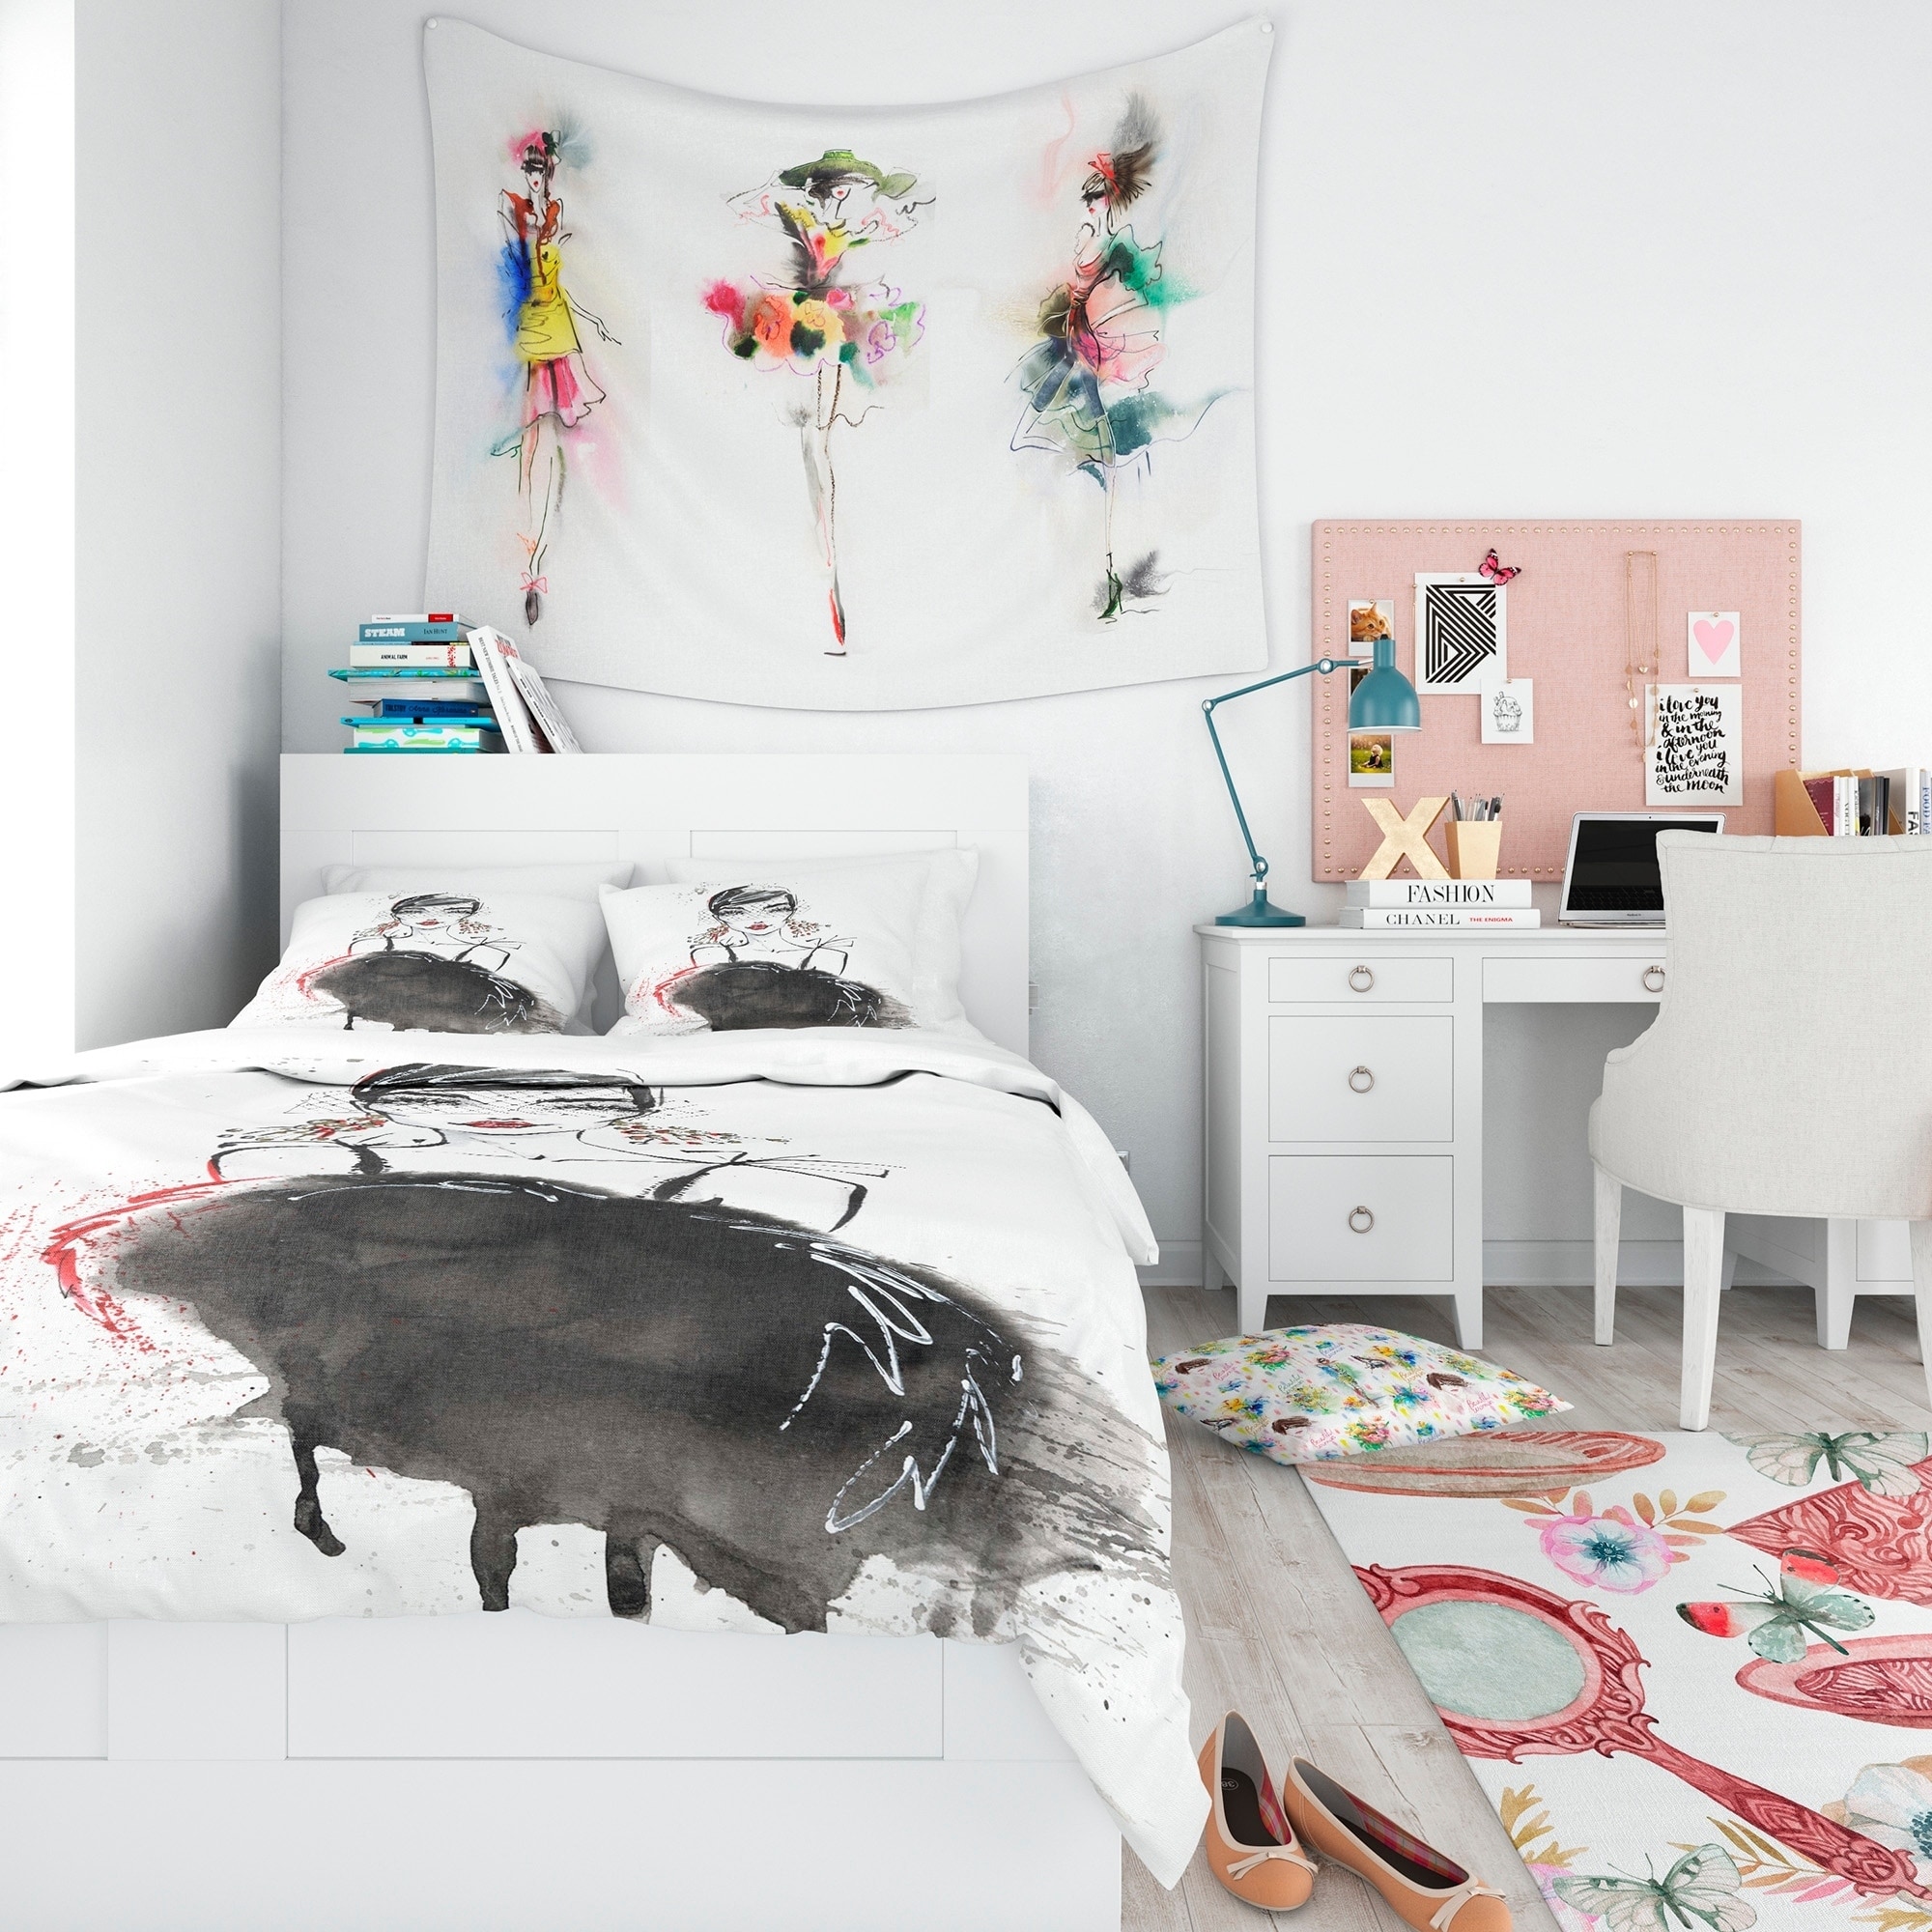 Black And White Feminine Bedrooms Design Ideas